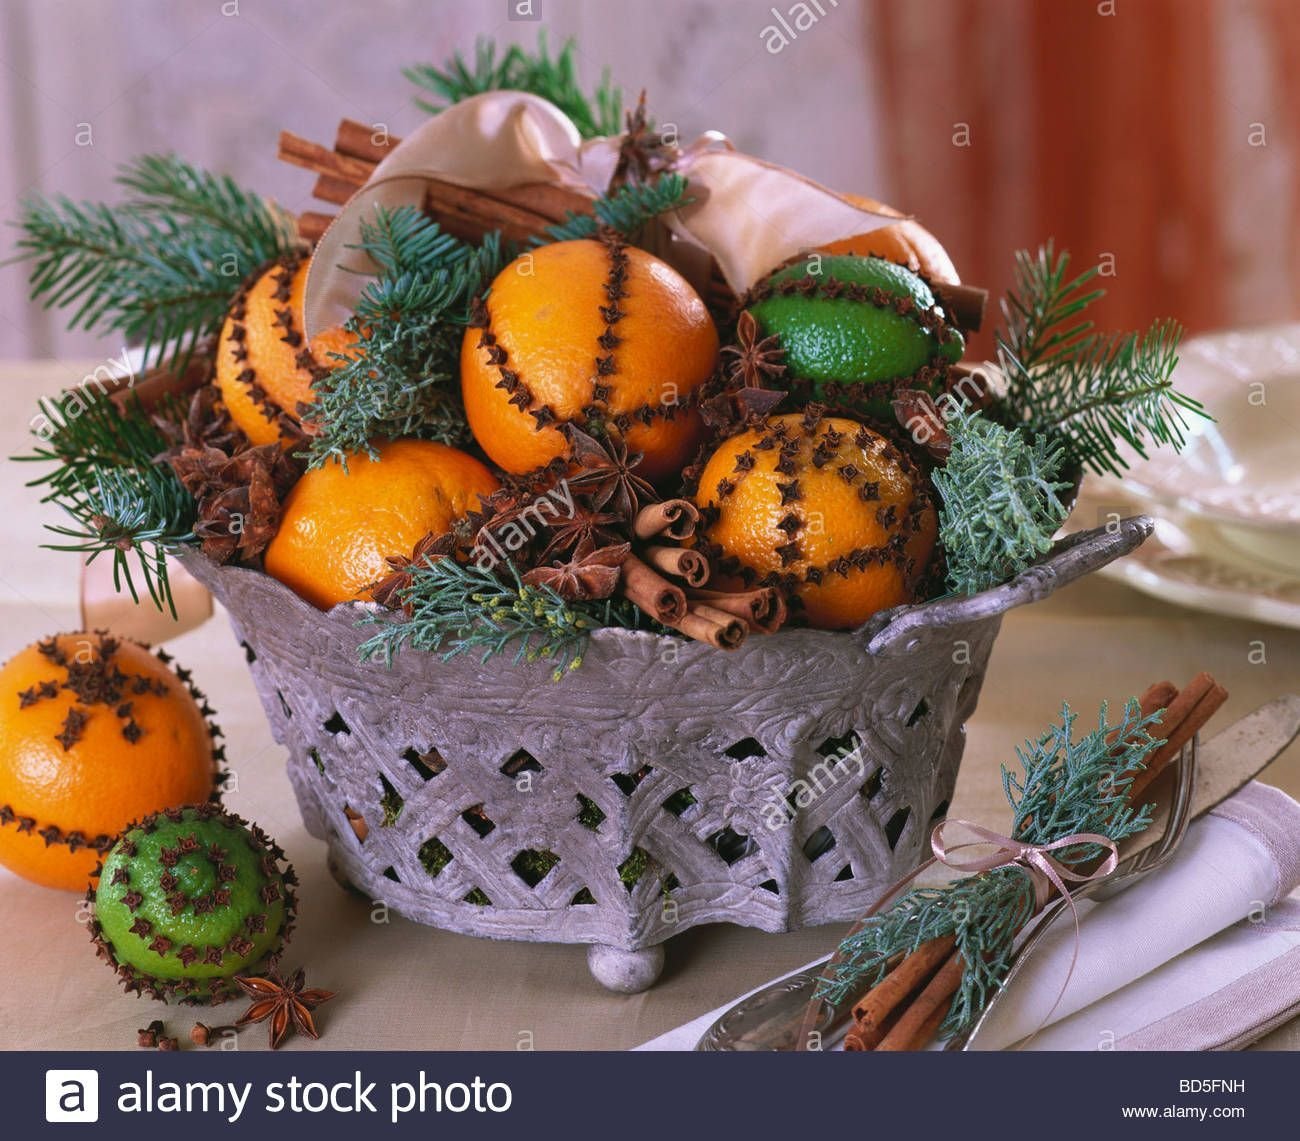 Подарить мандарины на новый год. Композиция с апельсинами. Новогодний декор с мандаринами. Украсить мандарины на новый год. Композиция из мандарин.